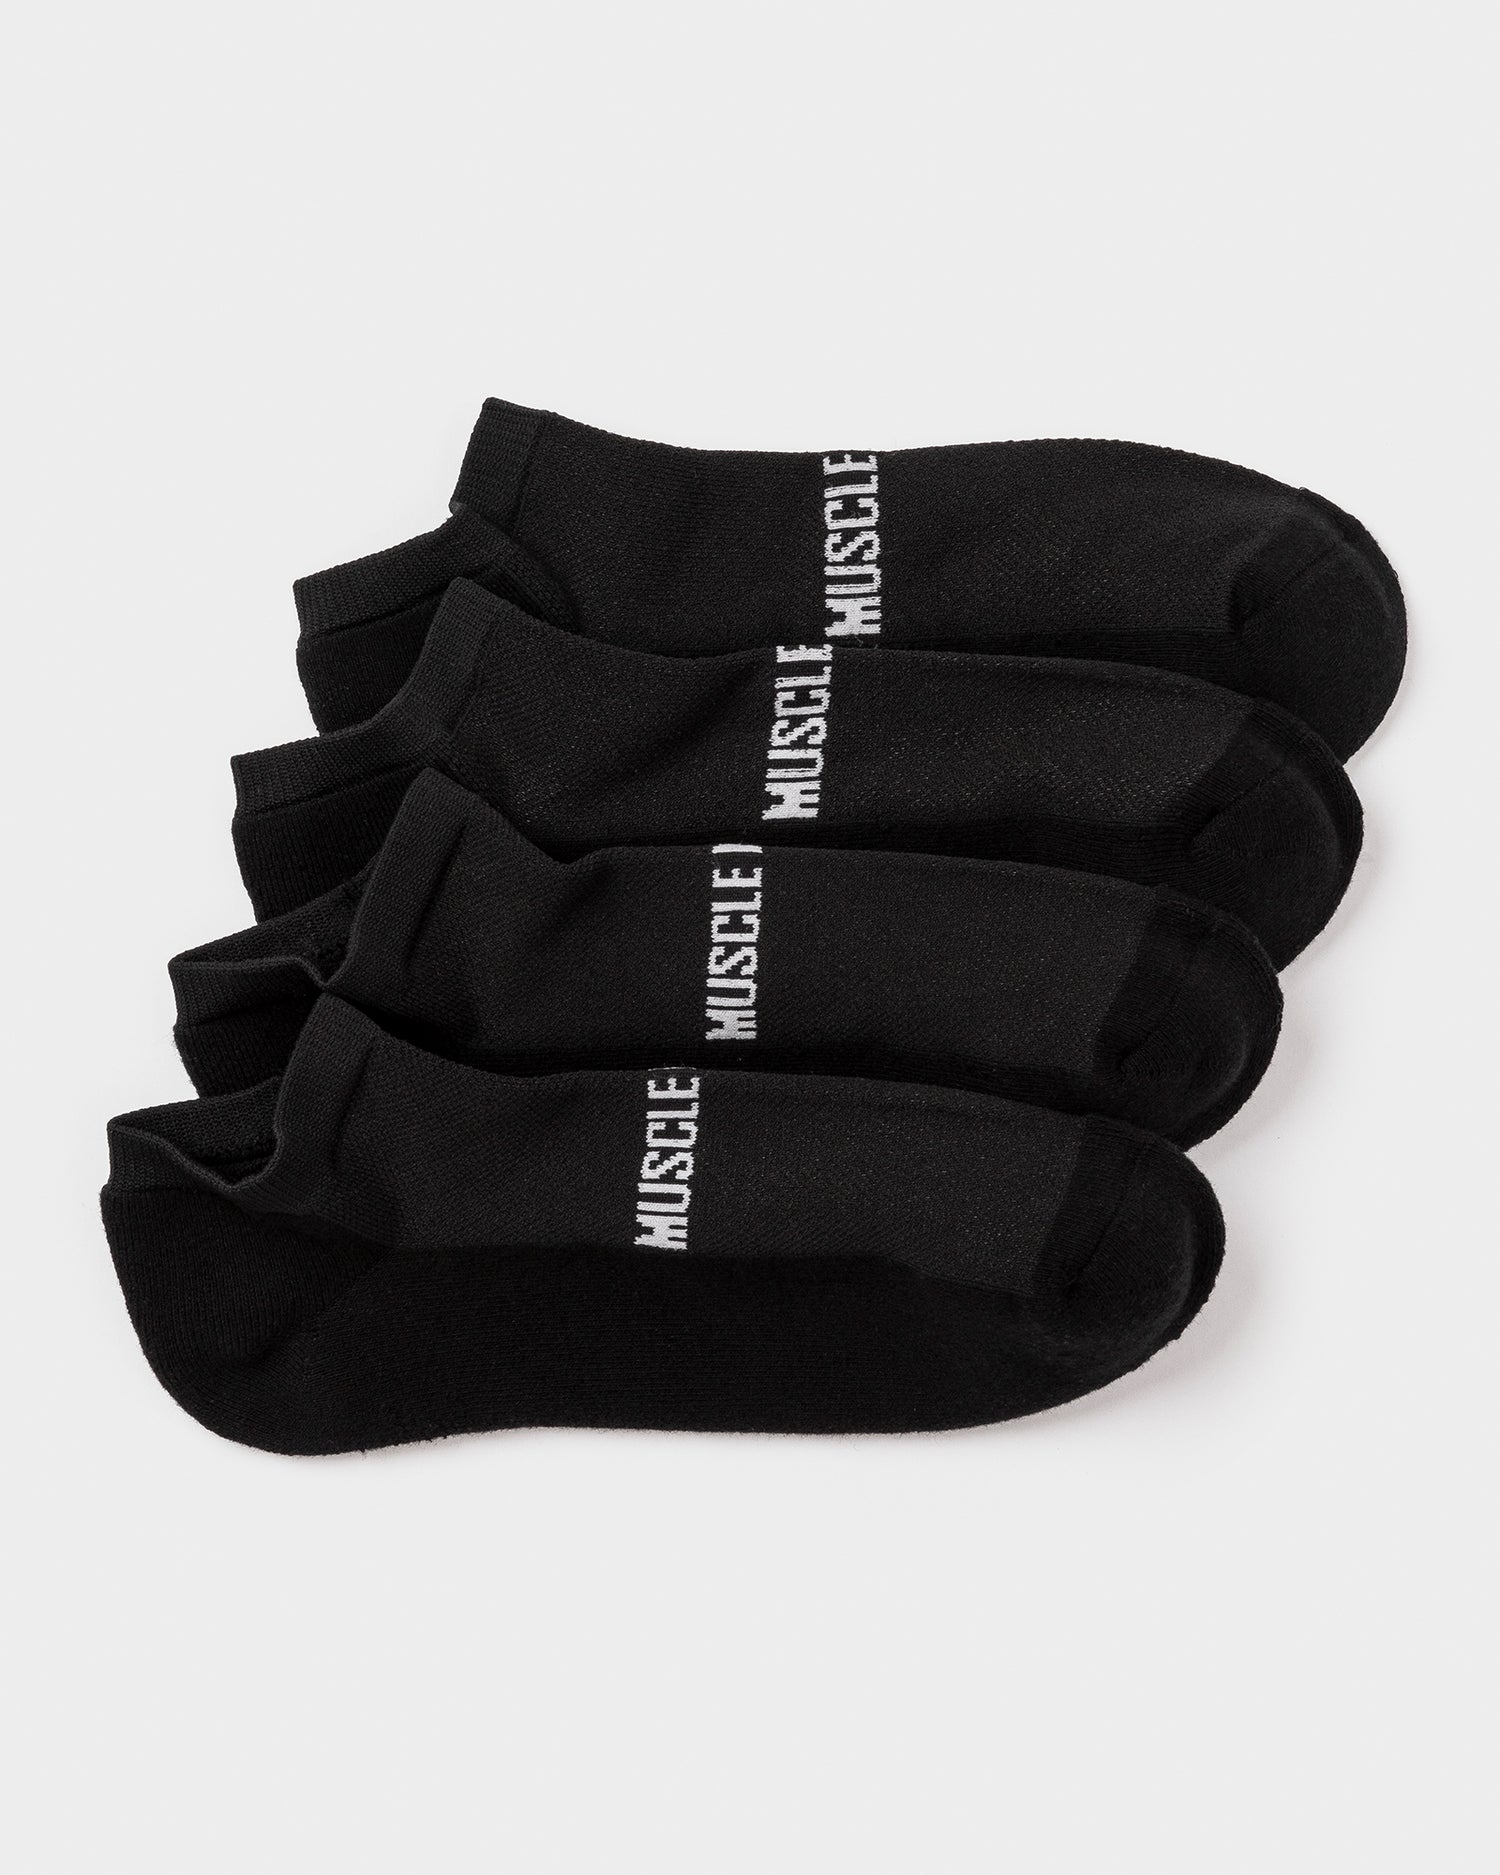 Mens Ankle Socks (x2 Pack) - Black